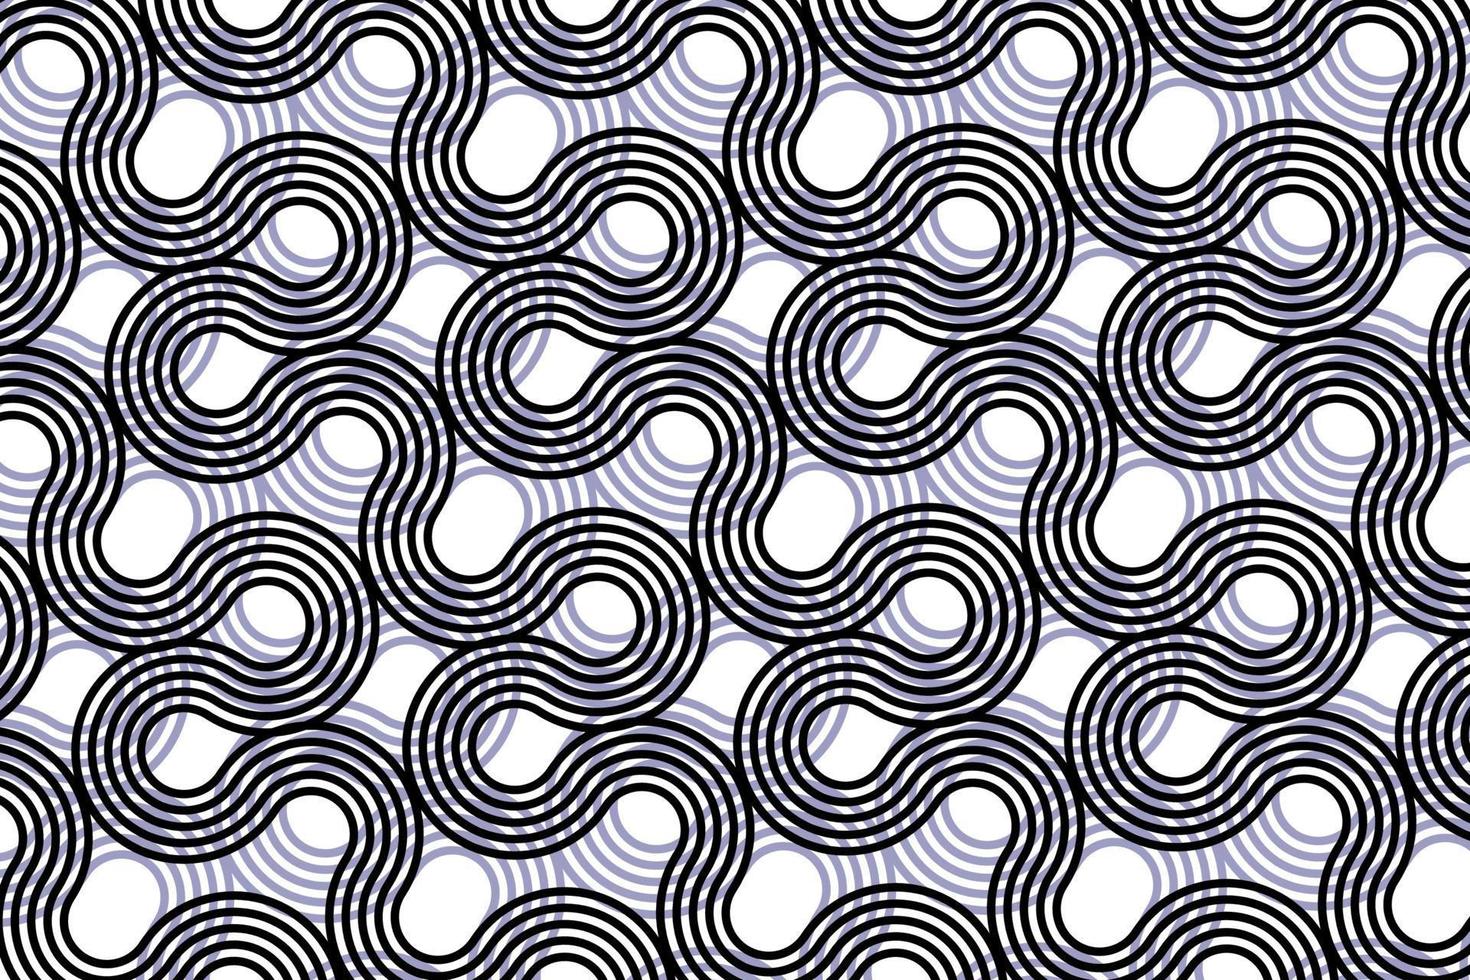 padrão de fundo preto e branco, linhas onduladas, ondas, vetor abstrato de fundo.